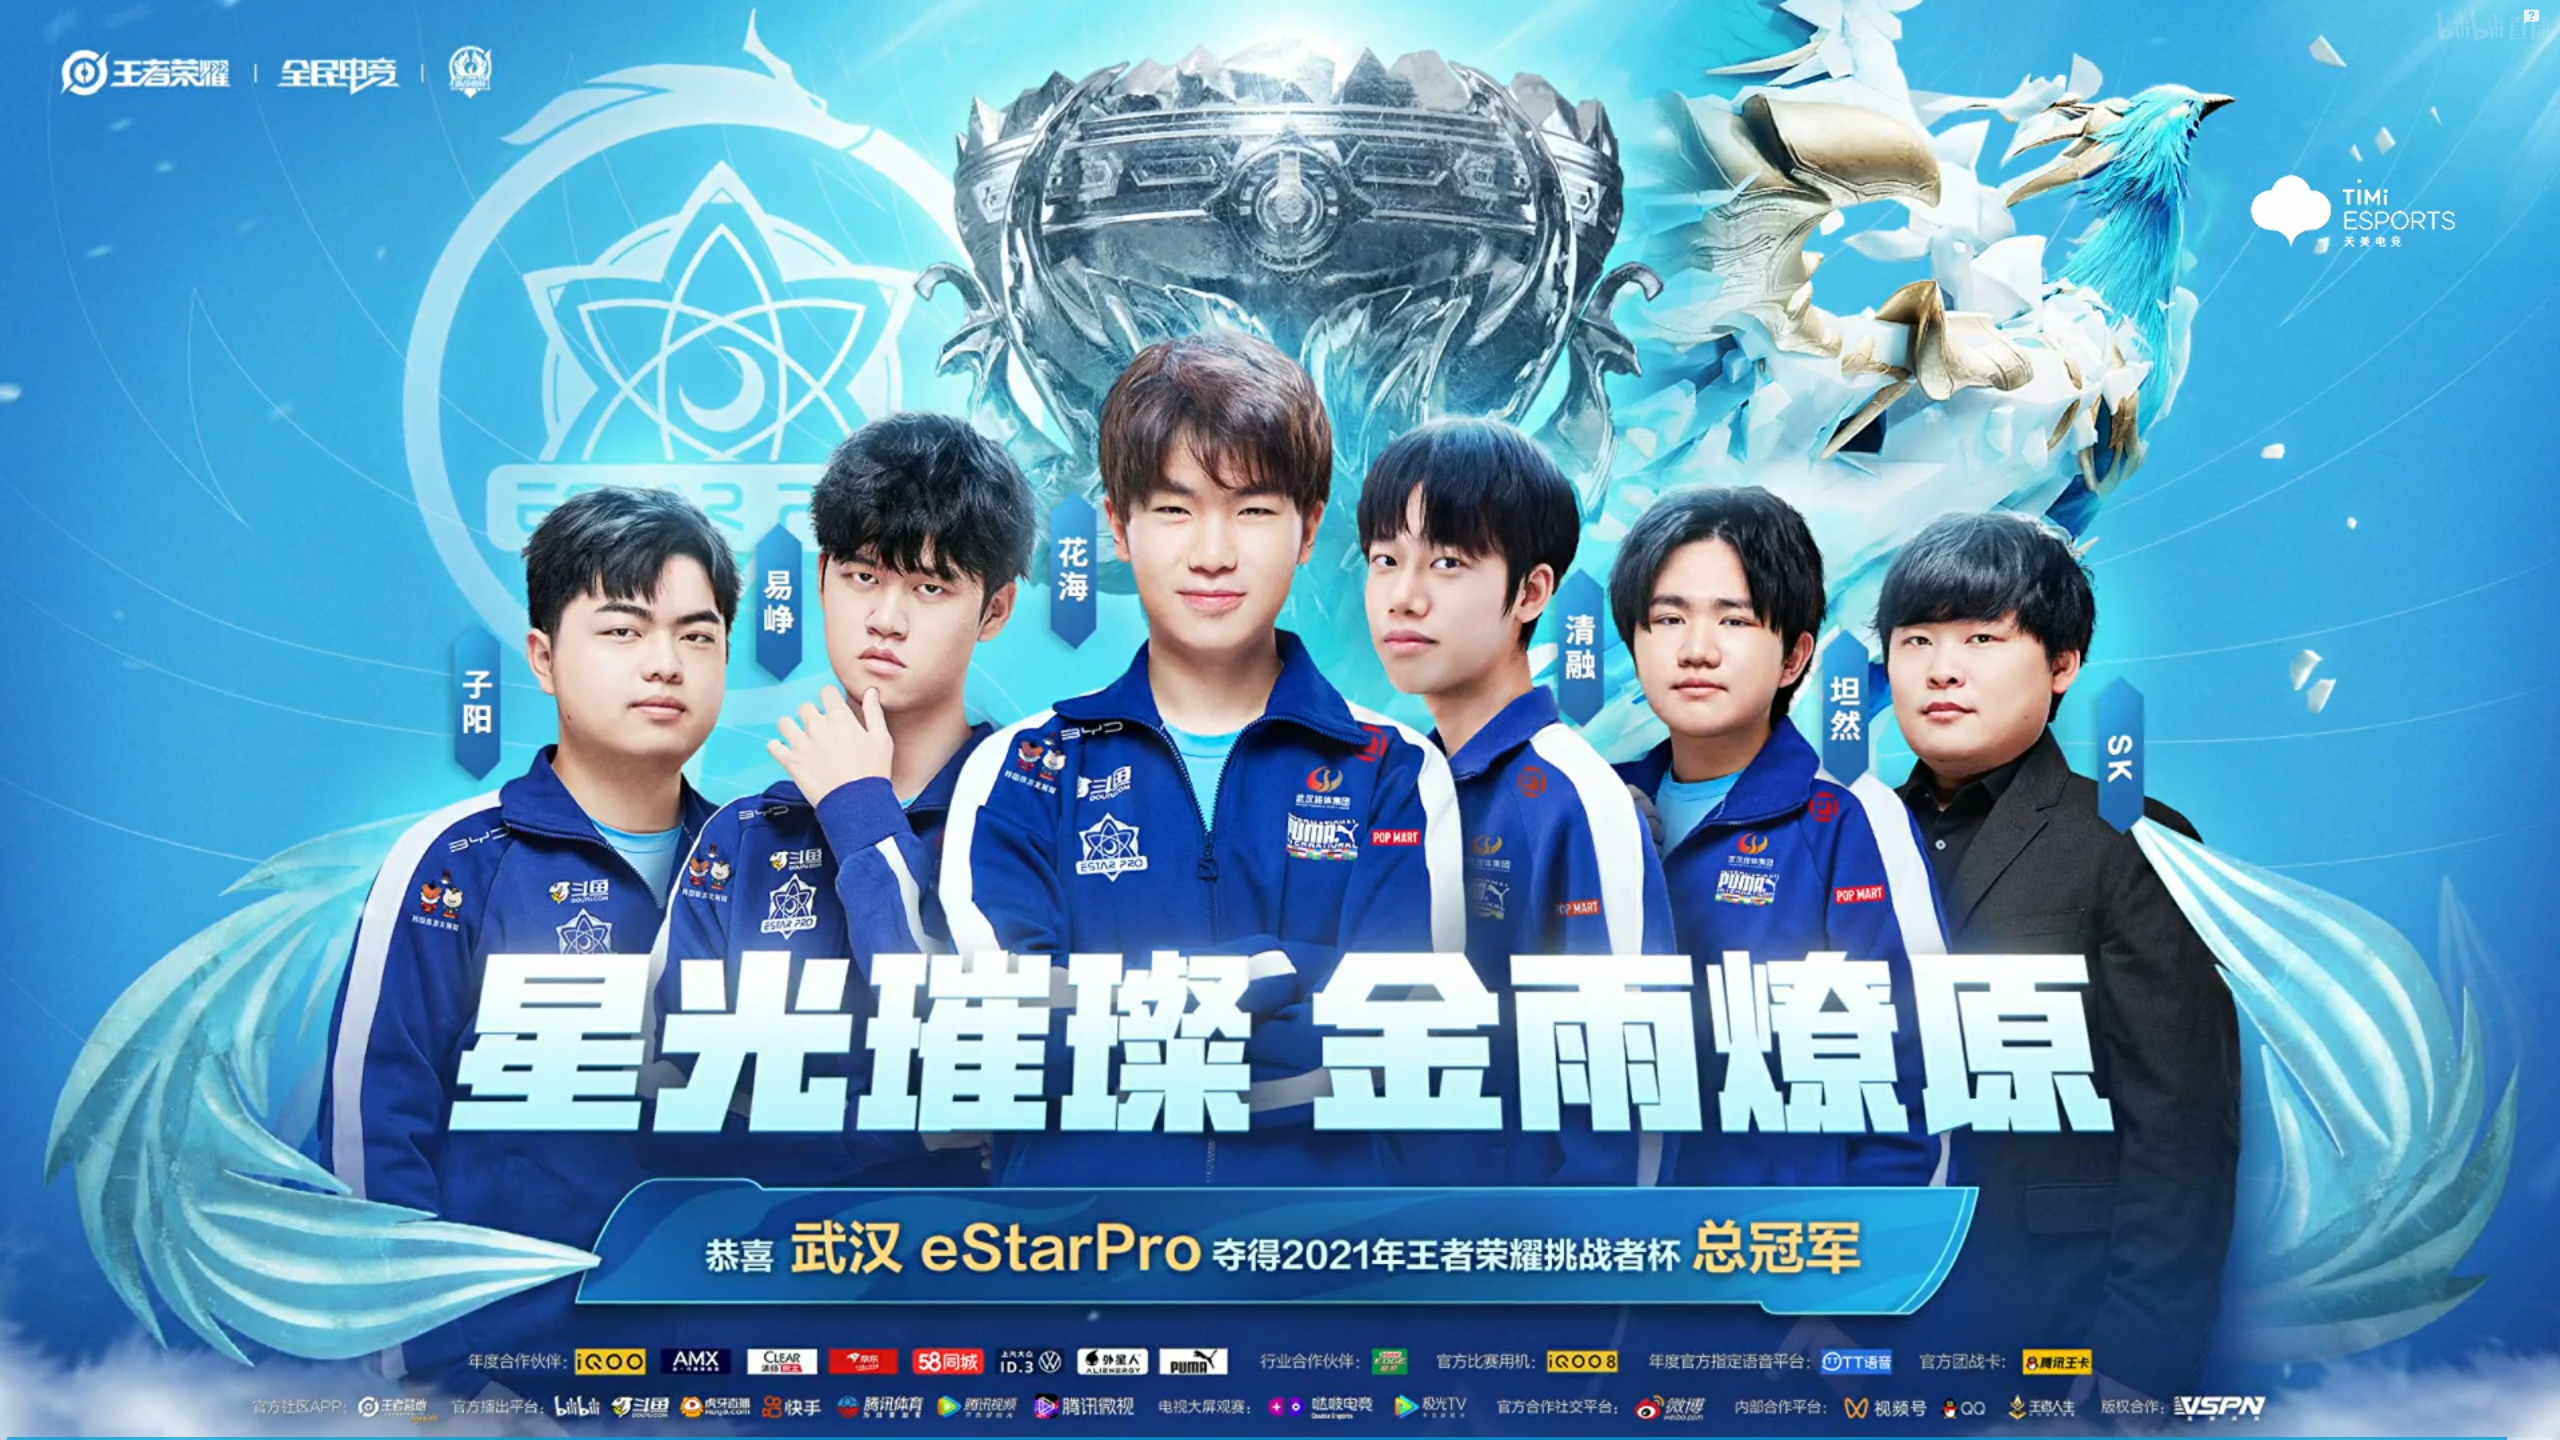 大满贯成就达成！武汉eStarPro夺得2021挑战者杯总冠军！